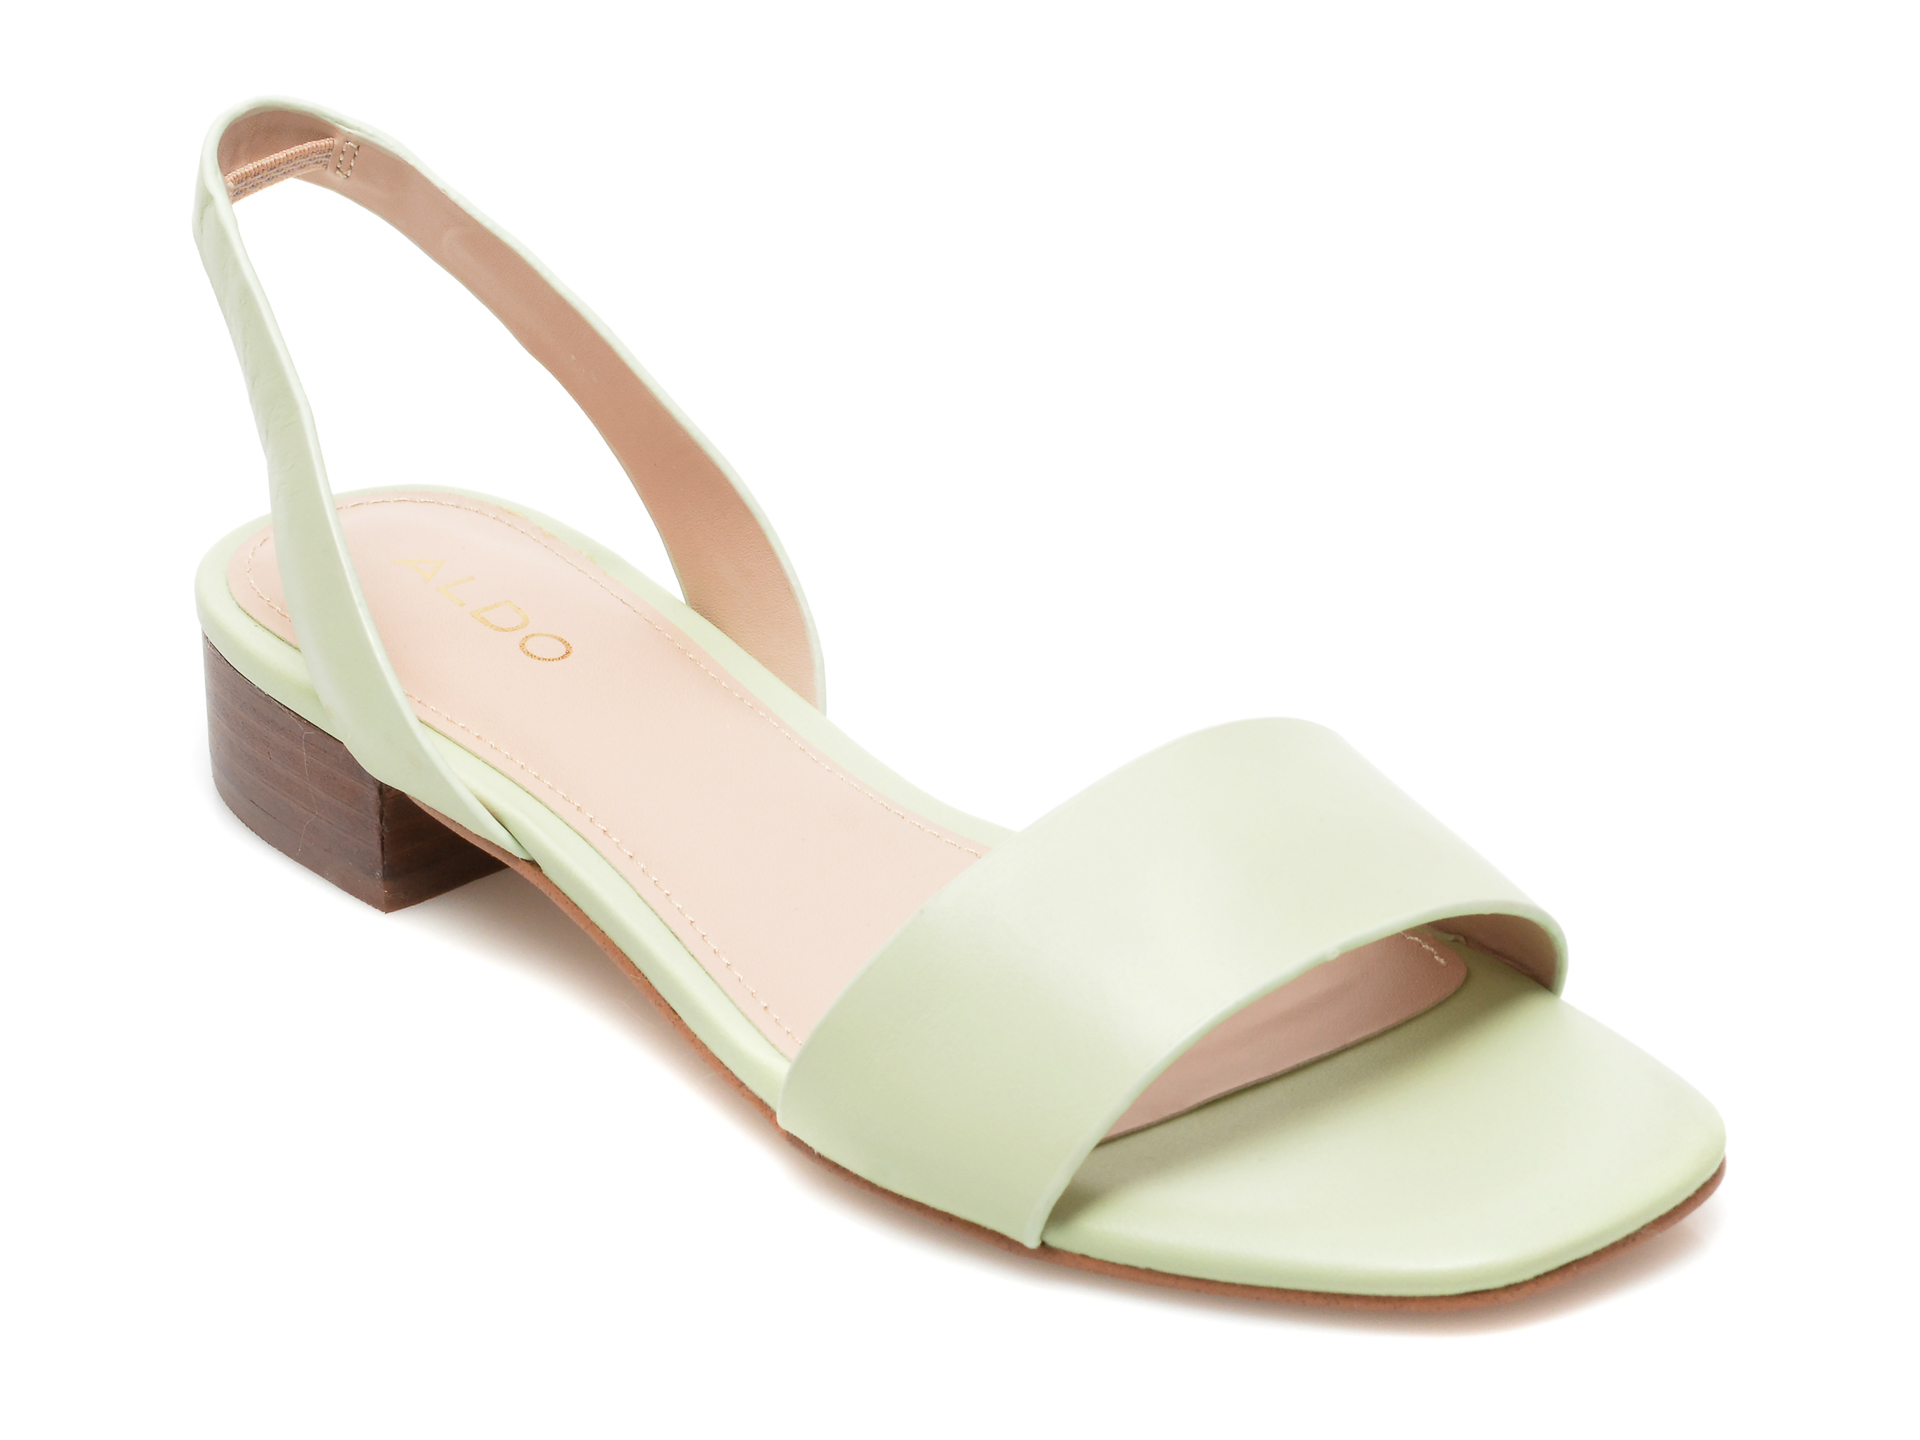 Sandale ALDO verzi, DOREDDA320, din piele naturala /femei/sandale imagine noua